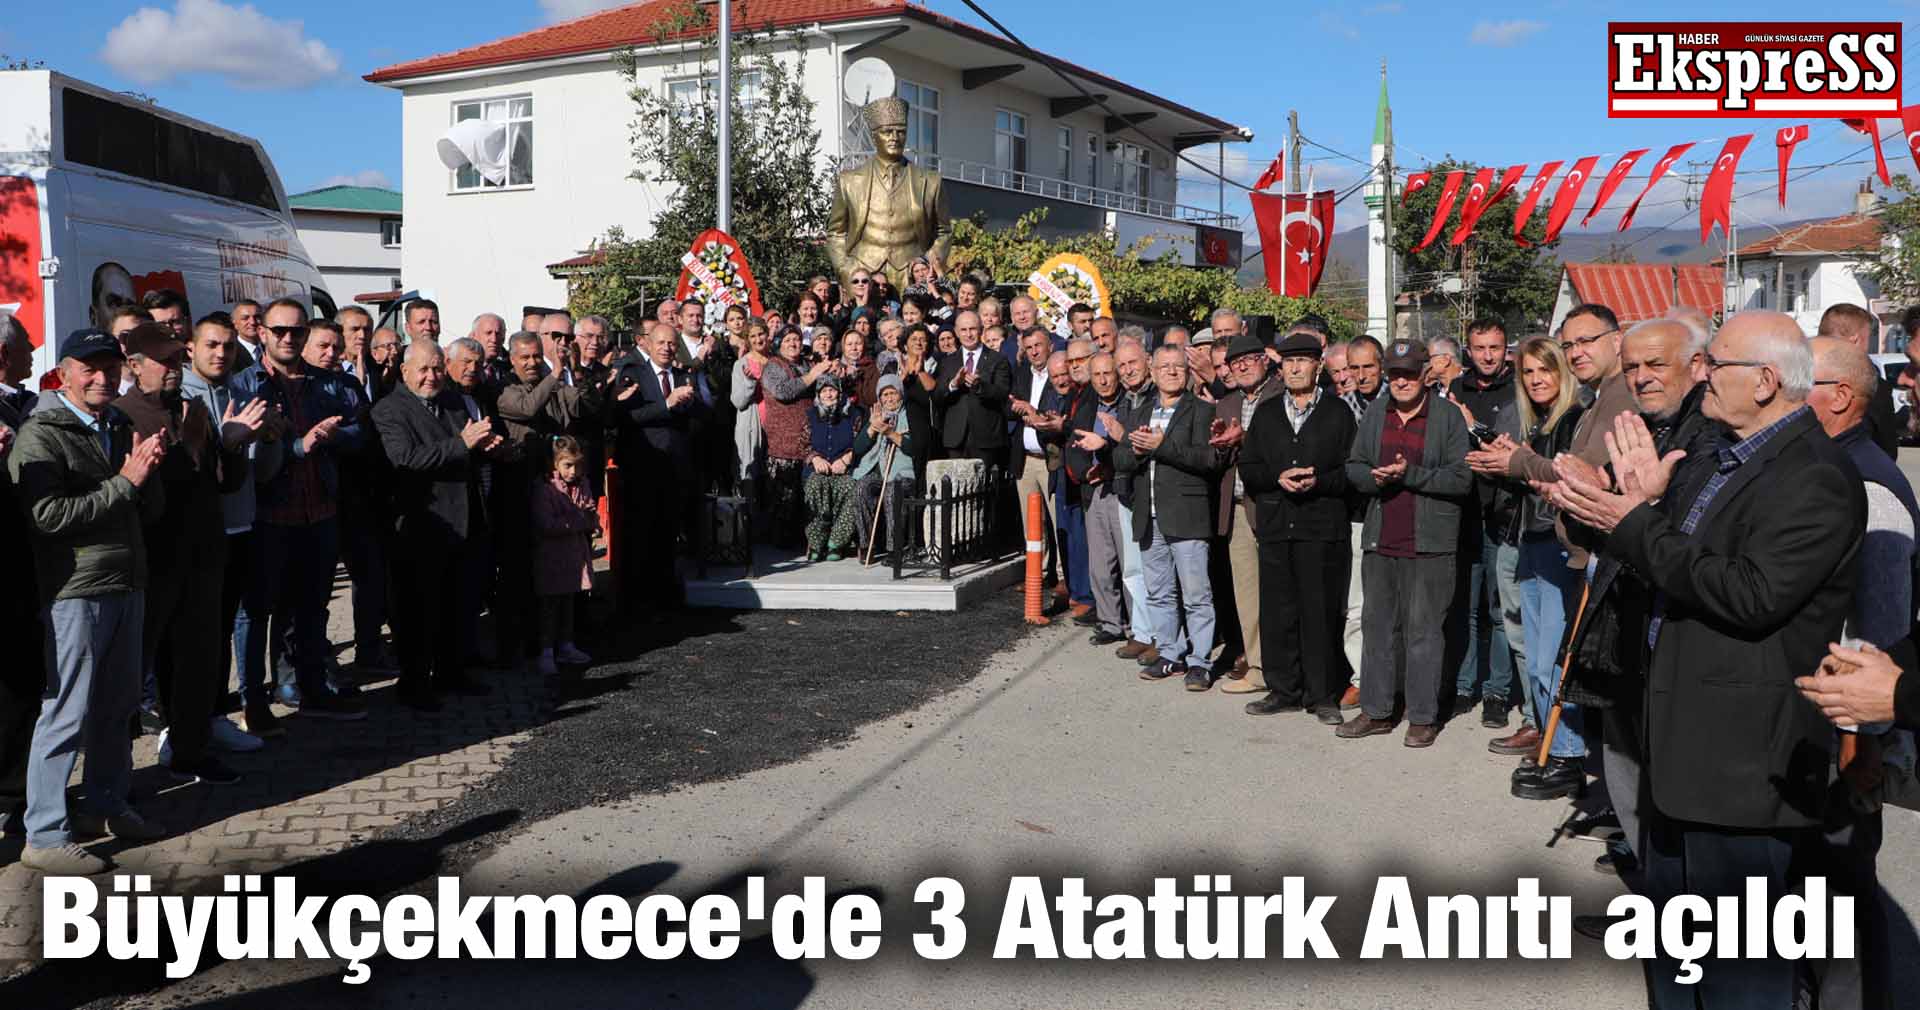 Büyükçekmece’de 3 Atatürk Anıtı açıldı